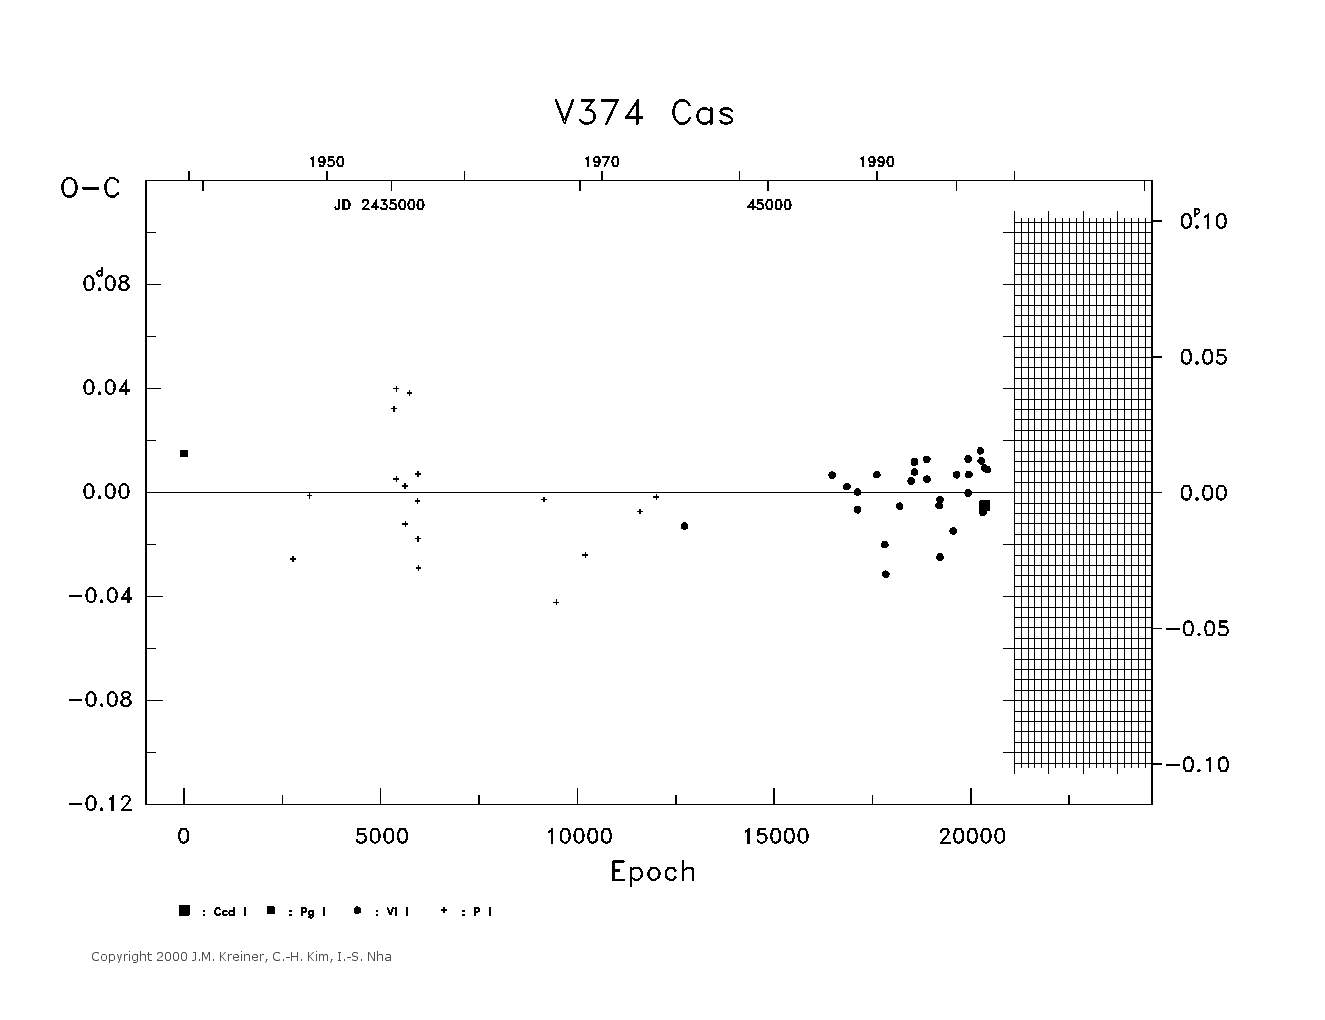 [IMAGE: large V374 CAS O-C diagram]